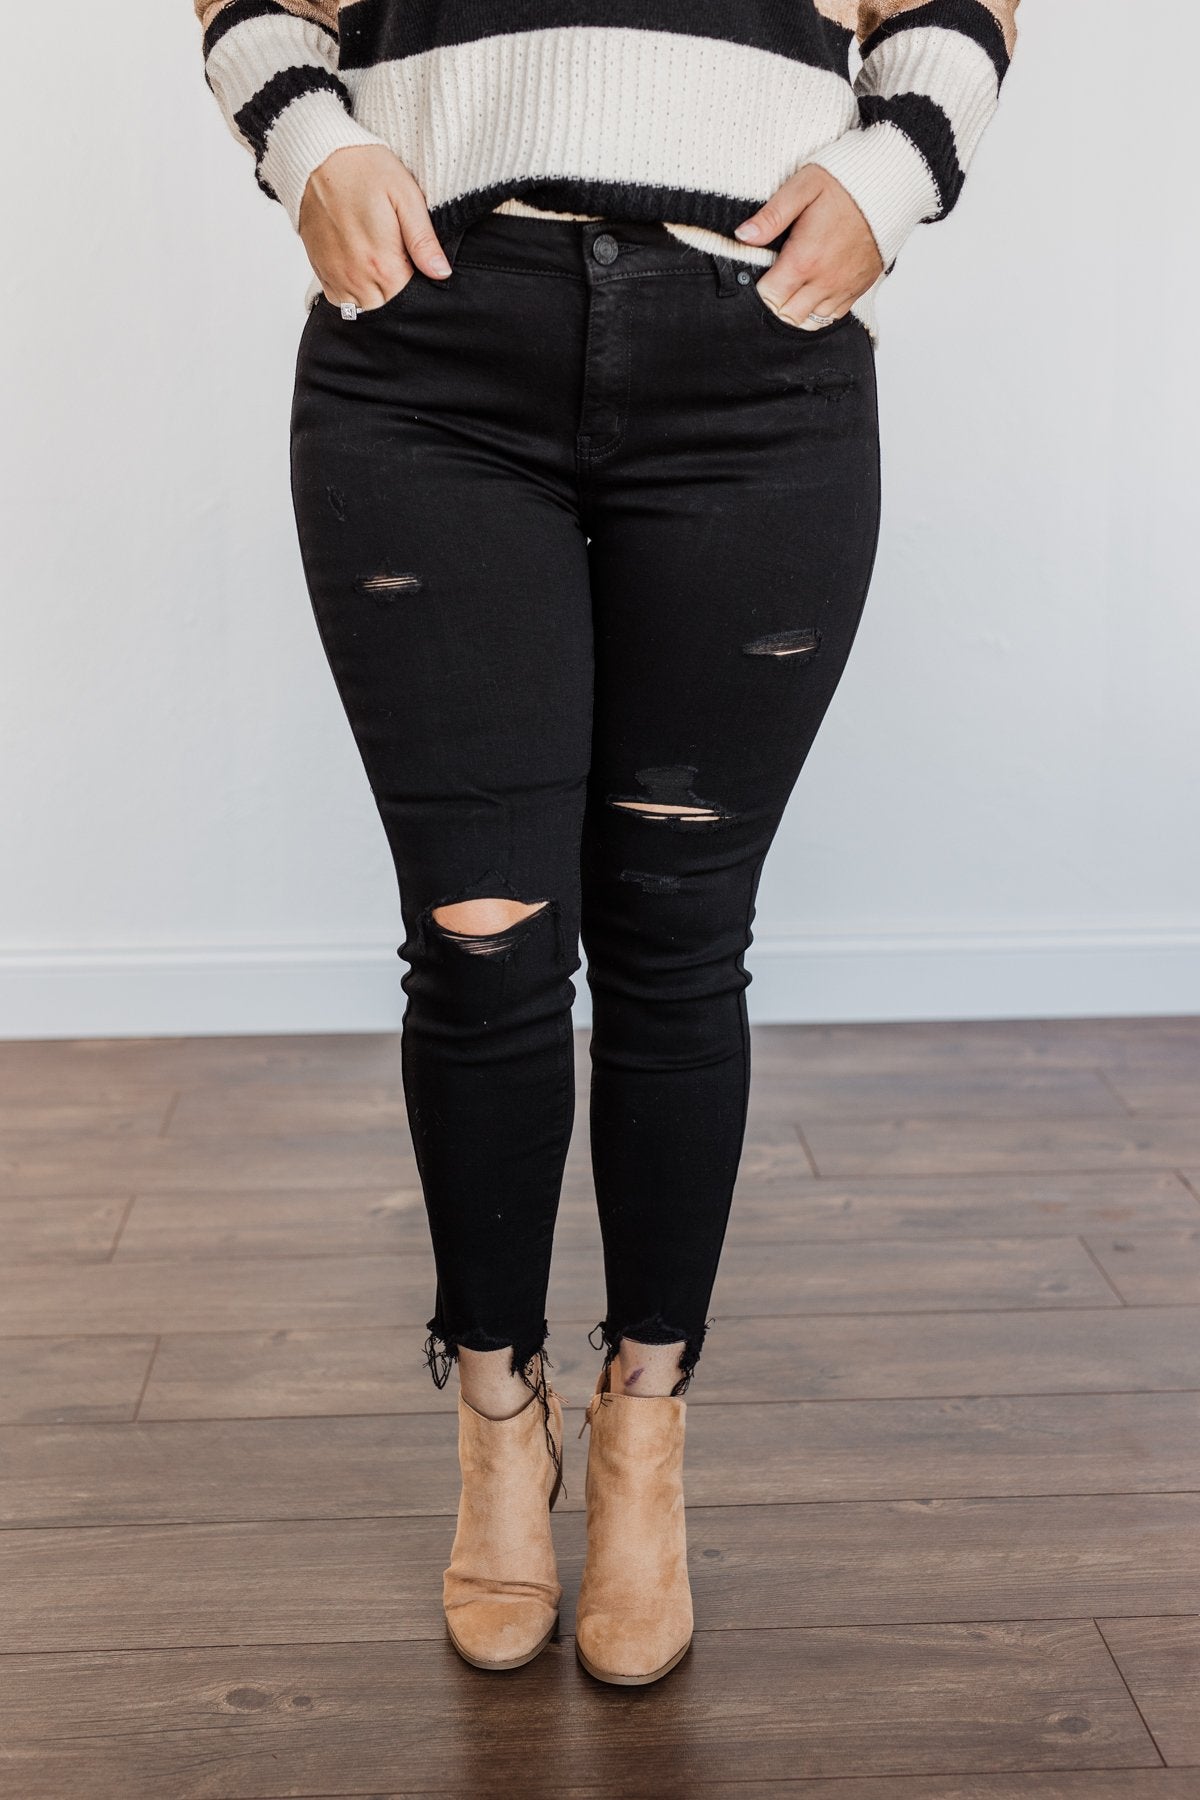 EnJean Ankle Crop Skinny Jeans- Black Giselle Wash